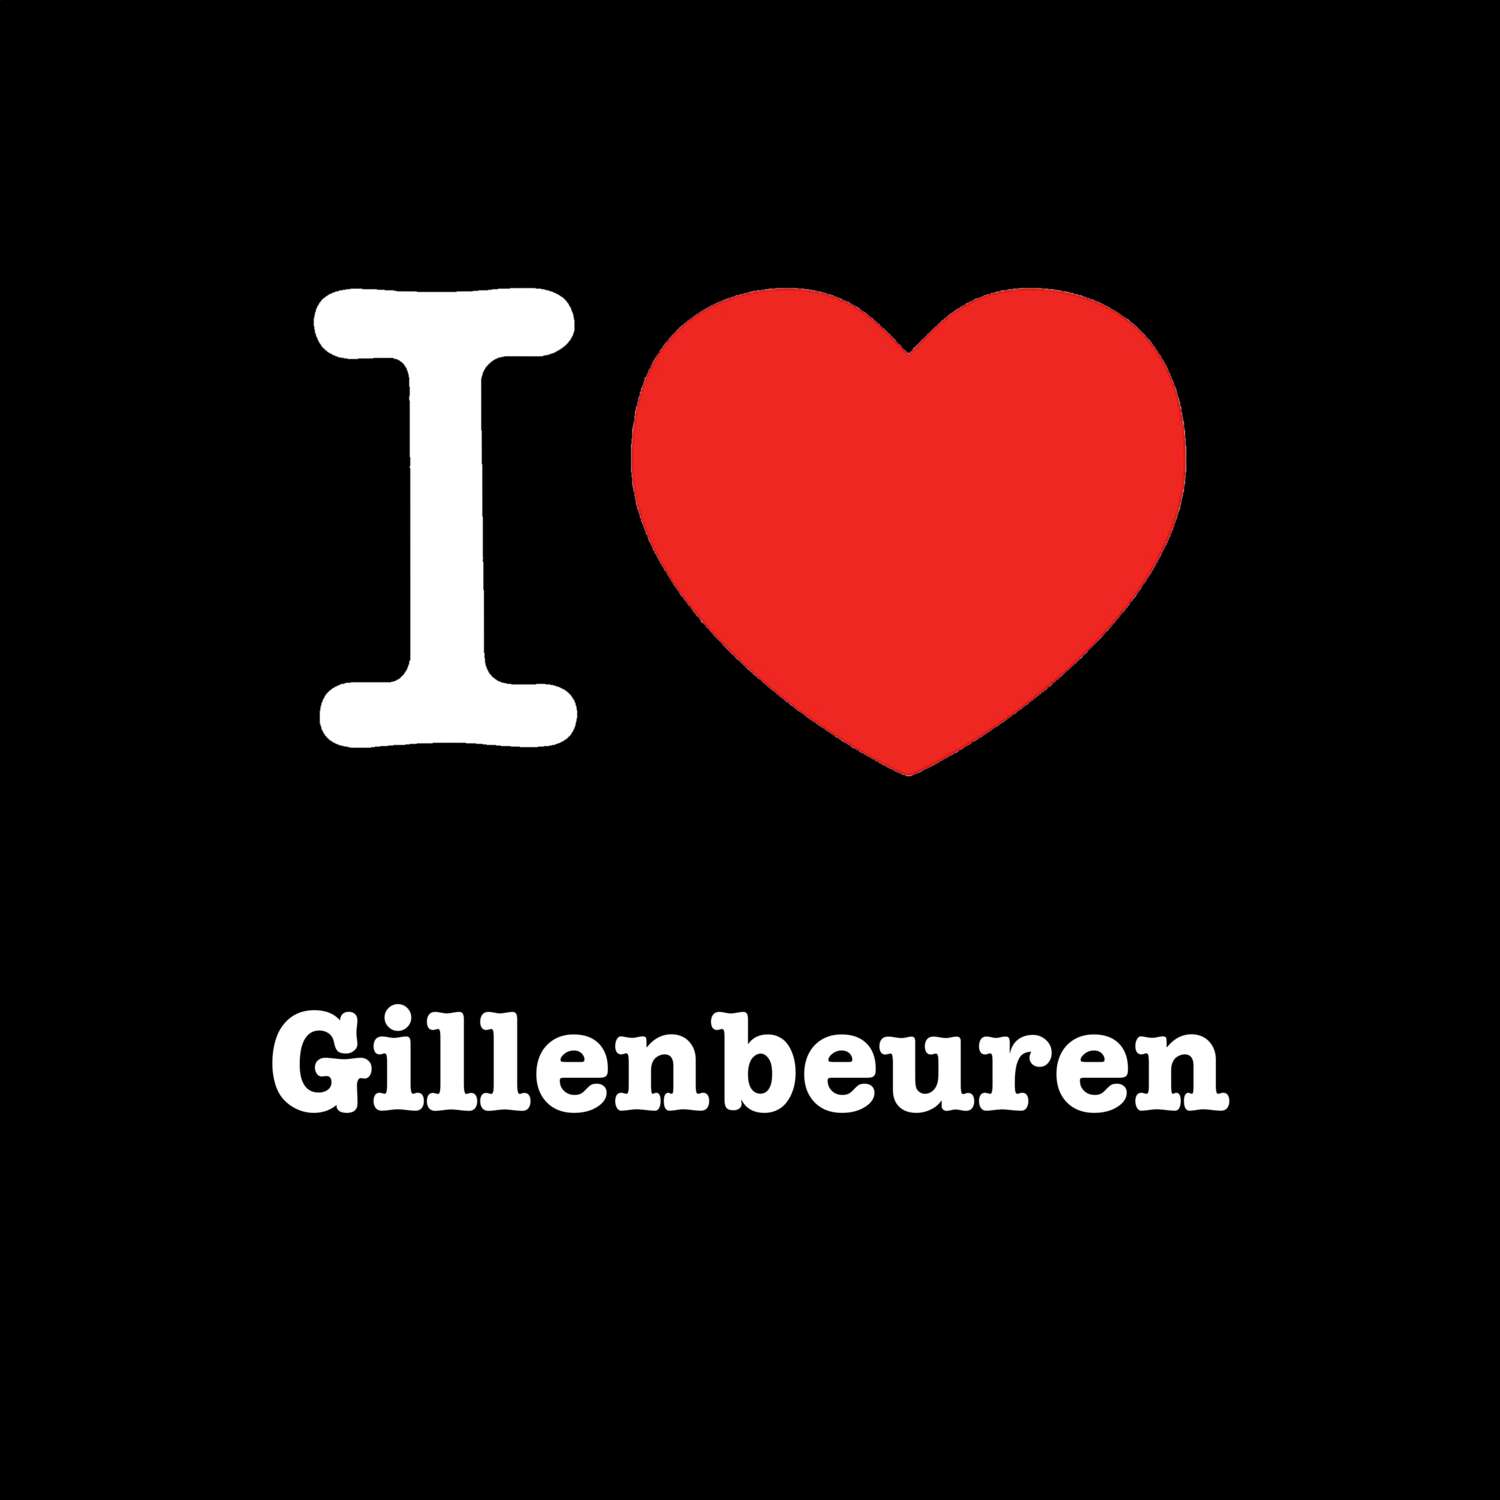 Gillenbeuren T-Shirt »I love«